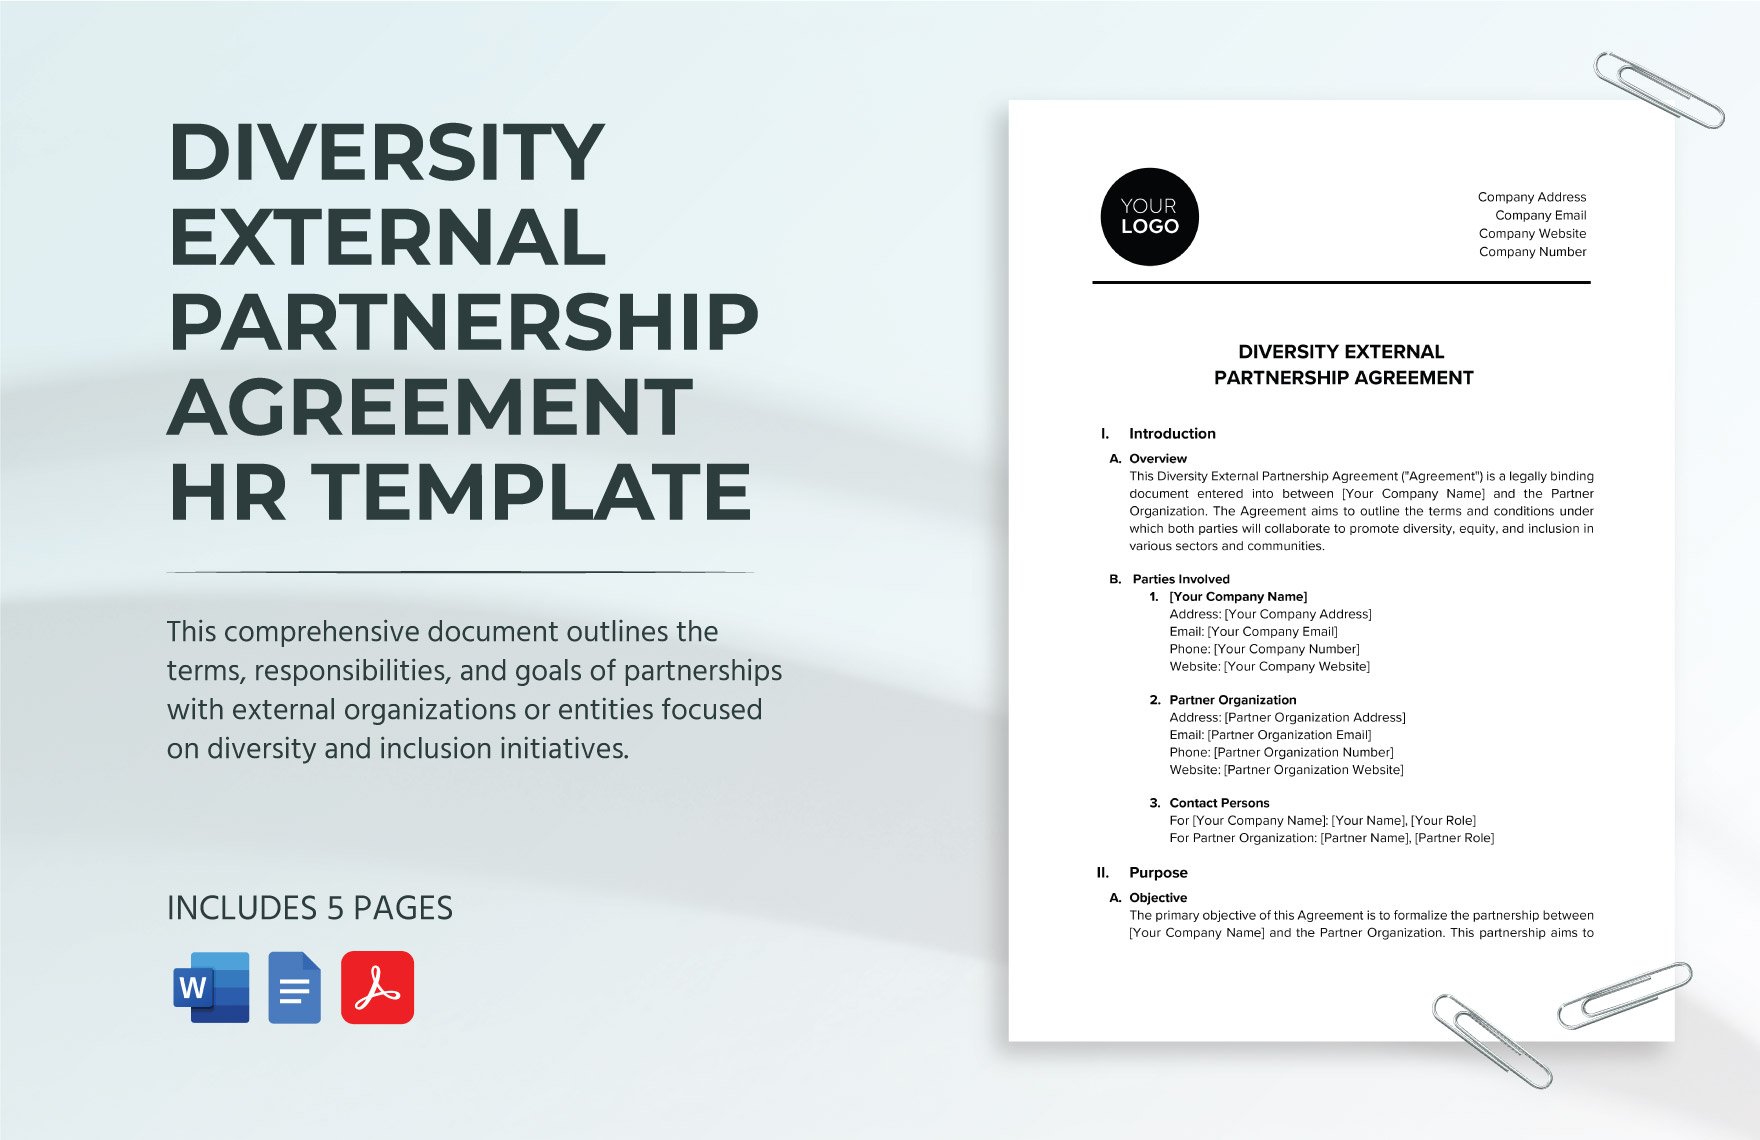 Diversity External Partnership Agreement HR Template